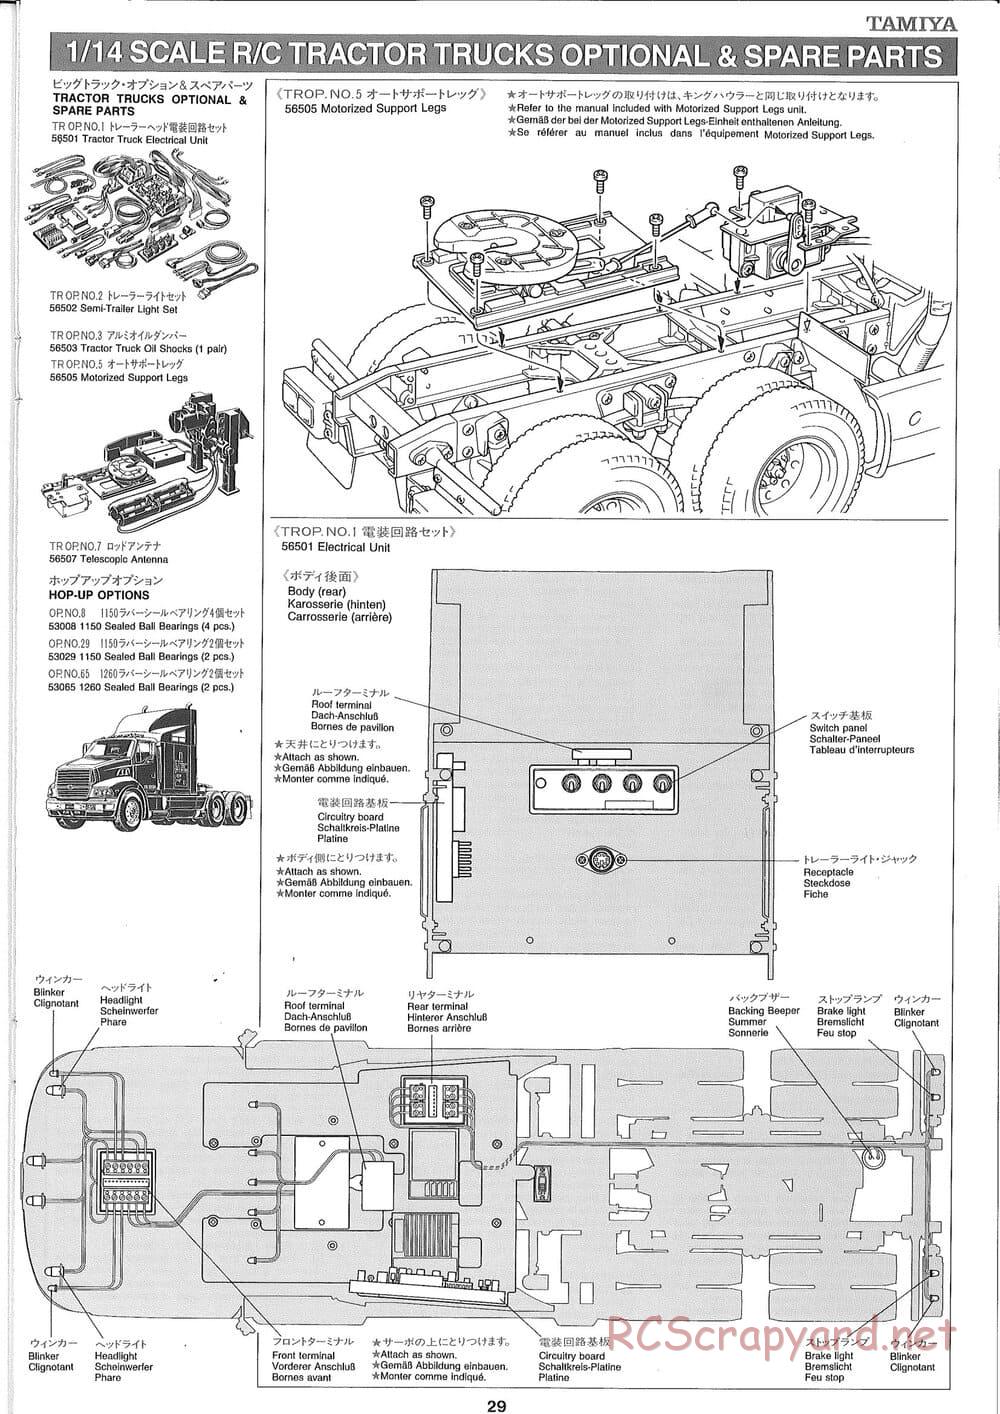 Tamiya - Ford Aeromax - Manual - Page 29